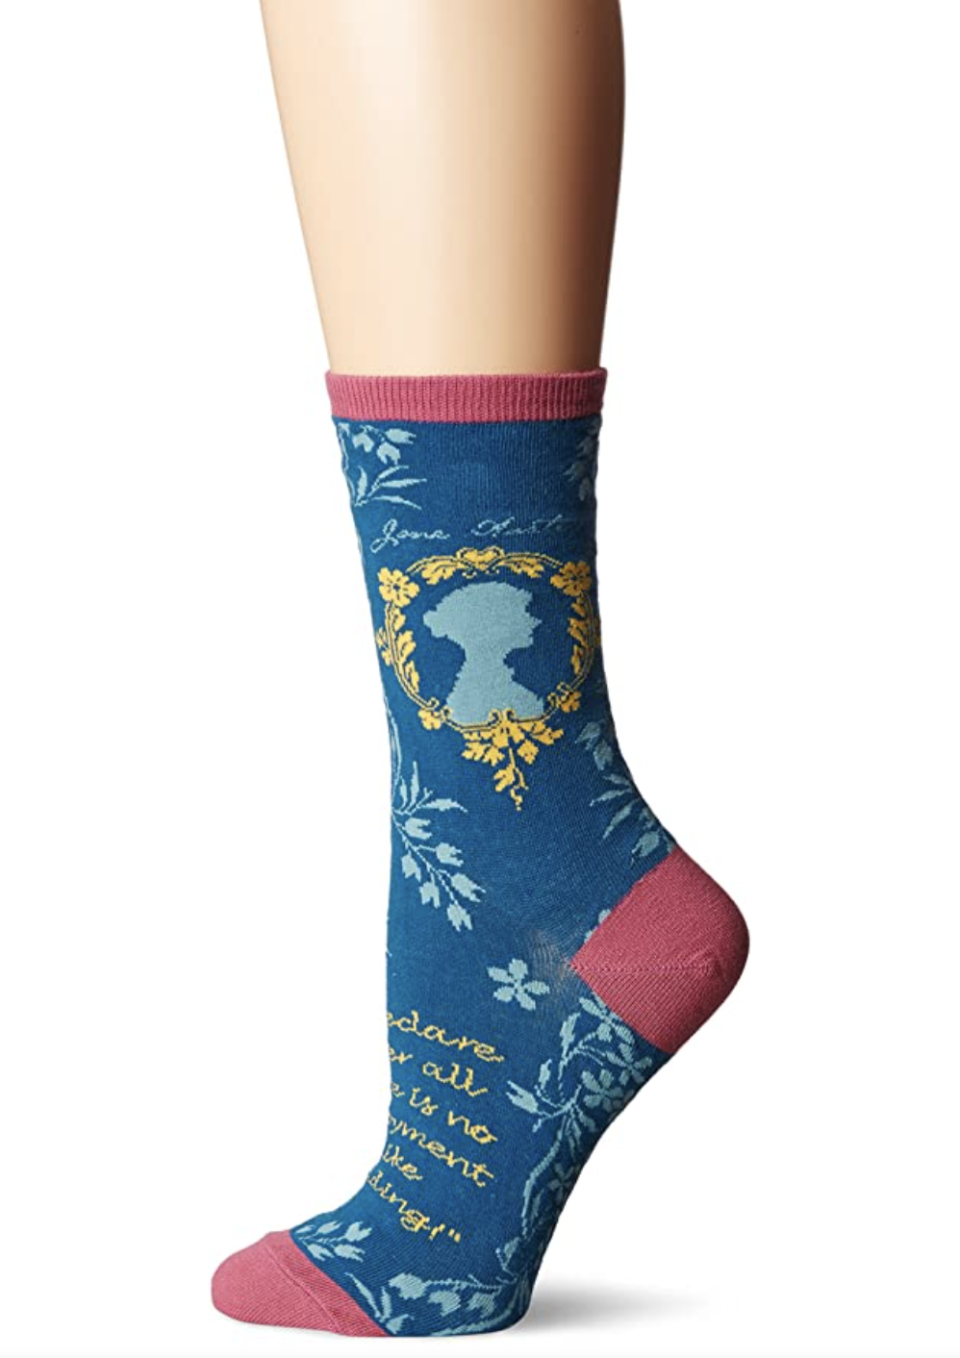 Jane Austen Socks